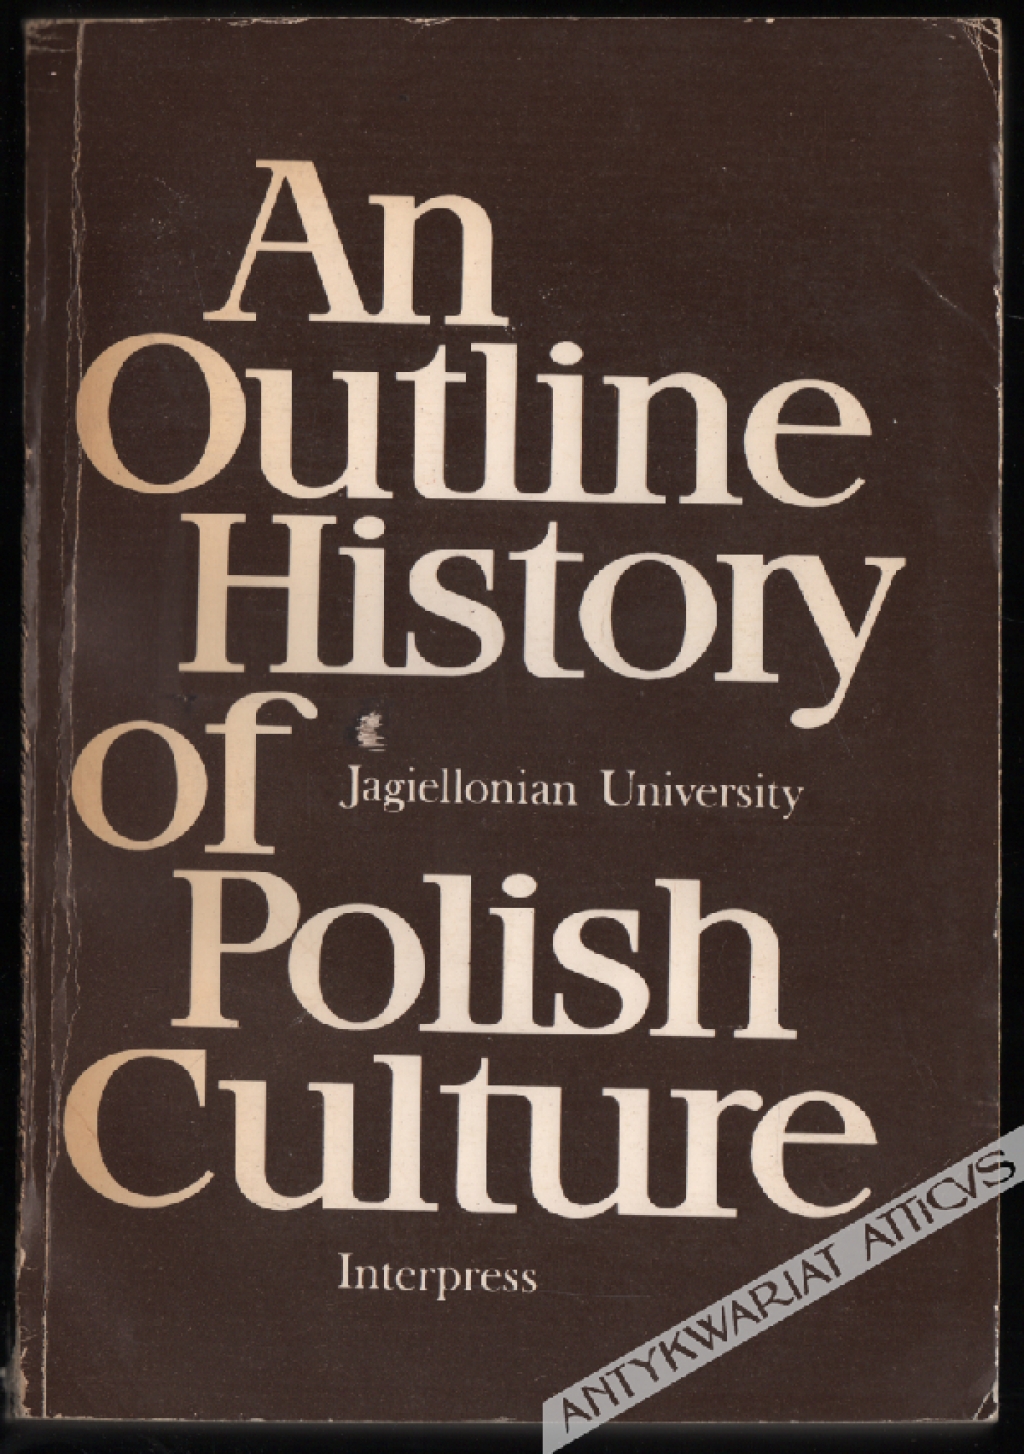 An outline history of Polish culture [Zarys dziejów kultury polskiej]